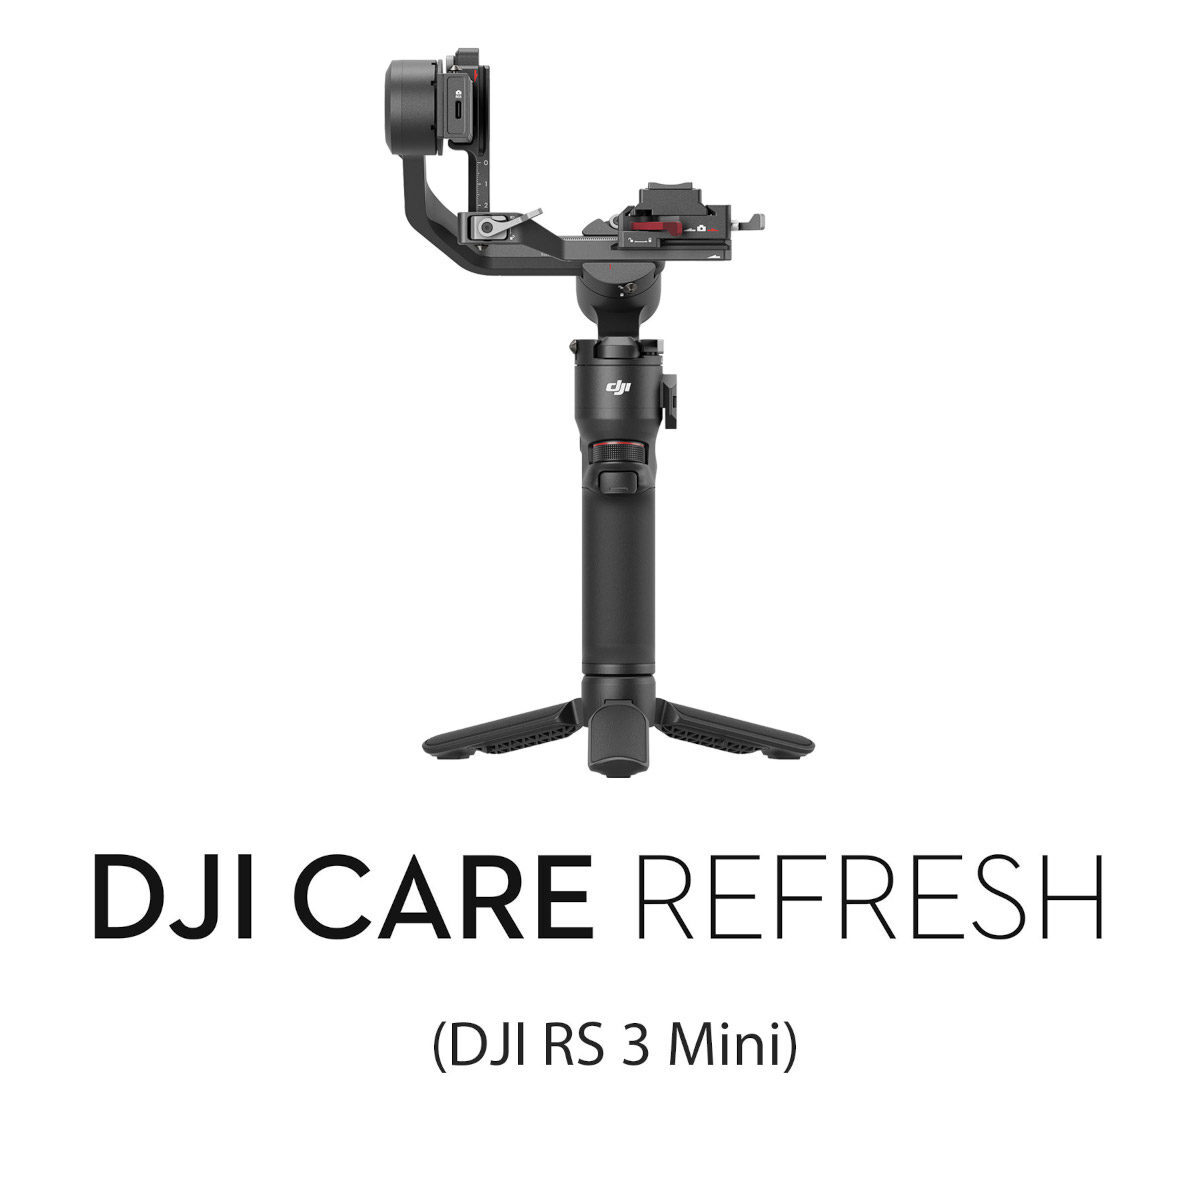 DJI DJI Care Refresh 2-Year Plan (DJI RS 3 Mini stabilizer)